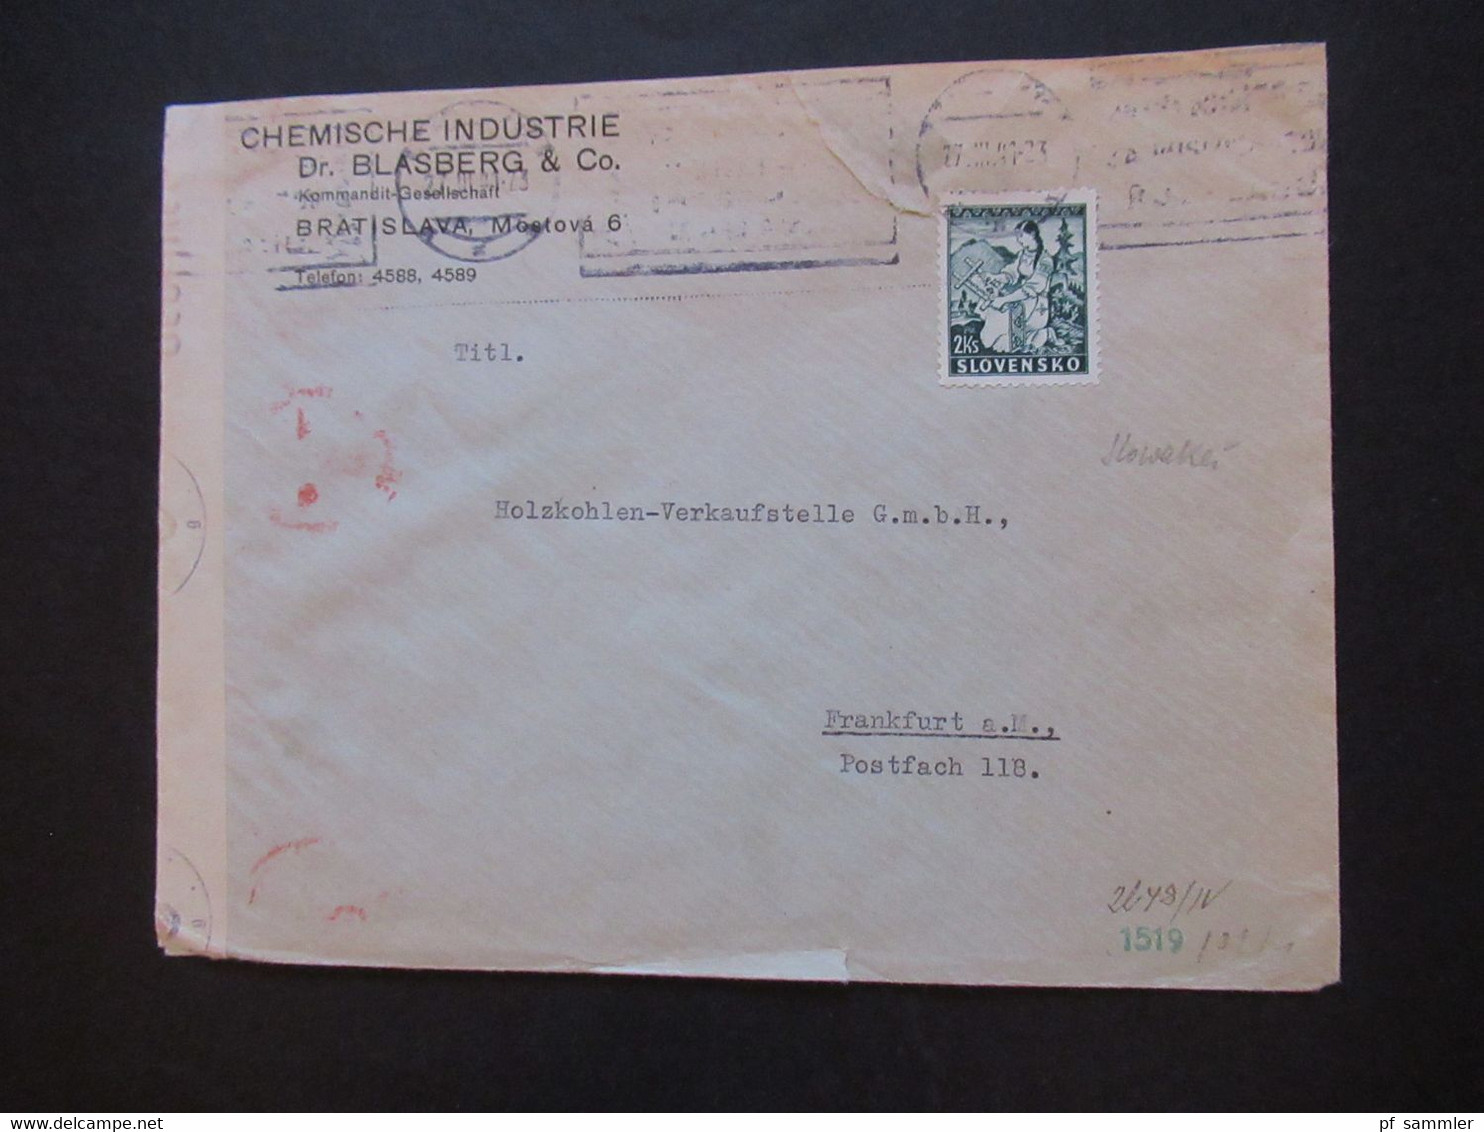 Slowakei 1941 Zensurbeleg OKW Mehrfachzensur Firmenumschlag Chemische Industrie Dr. Blasberg Bratislava - Briefe U. Dokumente